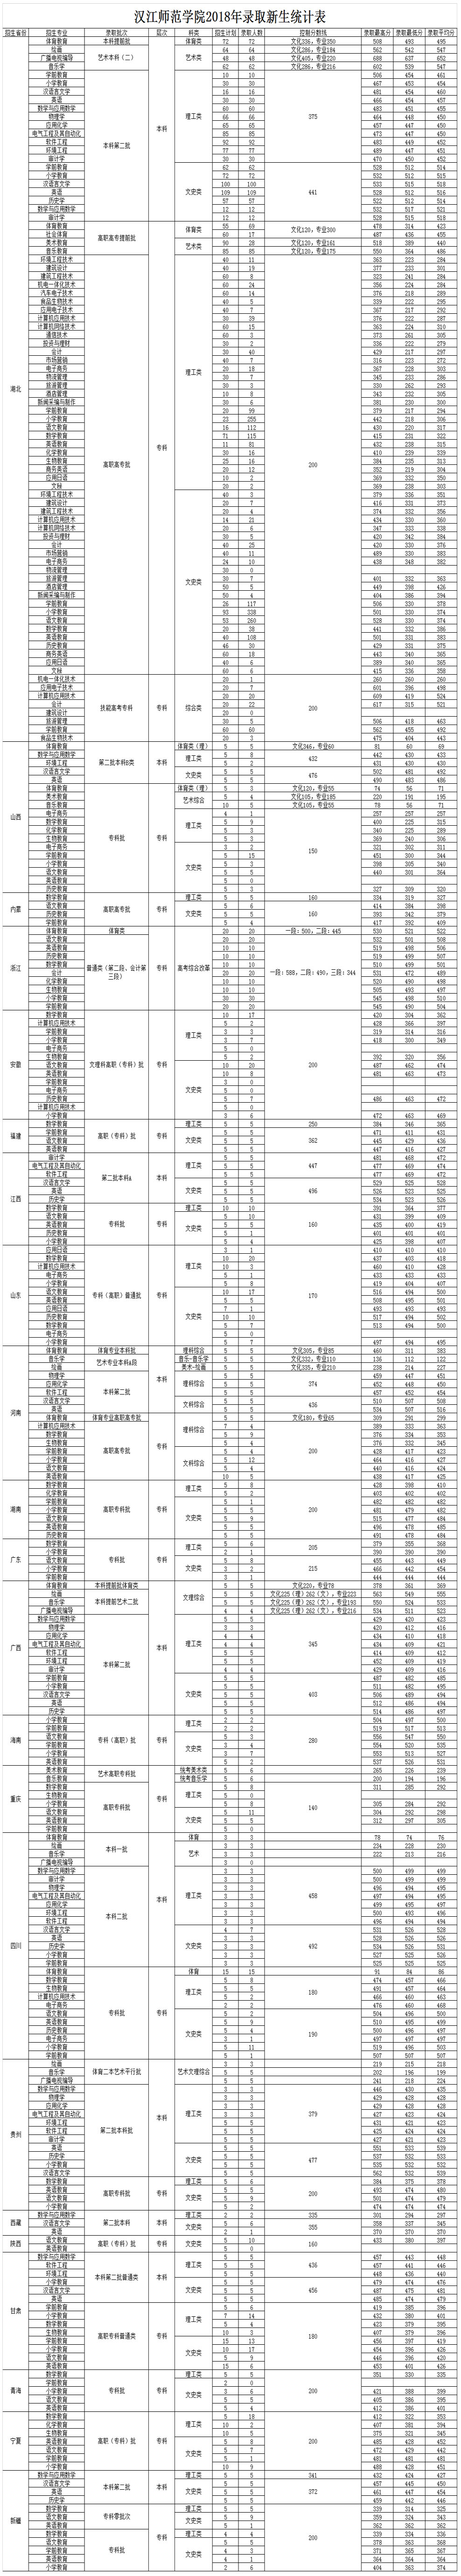 汉江师范学院2018年录取新手统计表